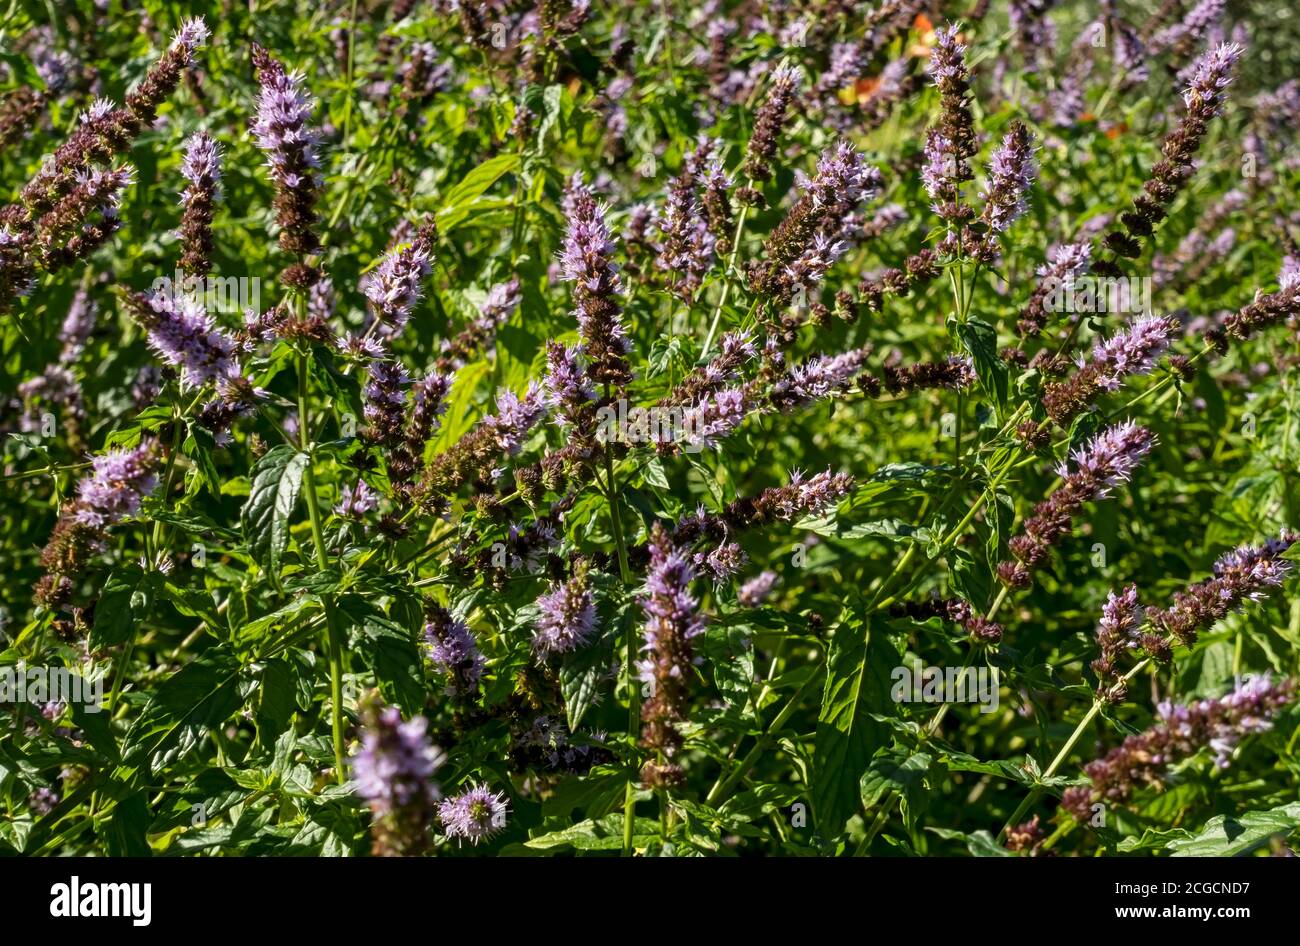 Nahaufnahme der lila Minze Strauch Pflanze Blumen wachsen In einem Sommer Kräutergarten England Vereinigtes Königreich GB Großbritannien Stockfoto